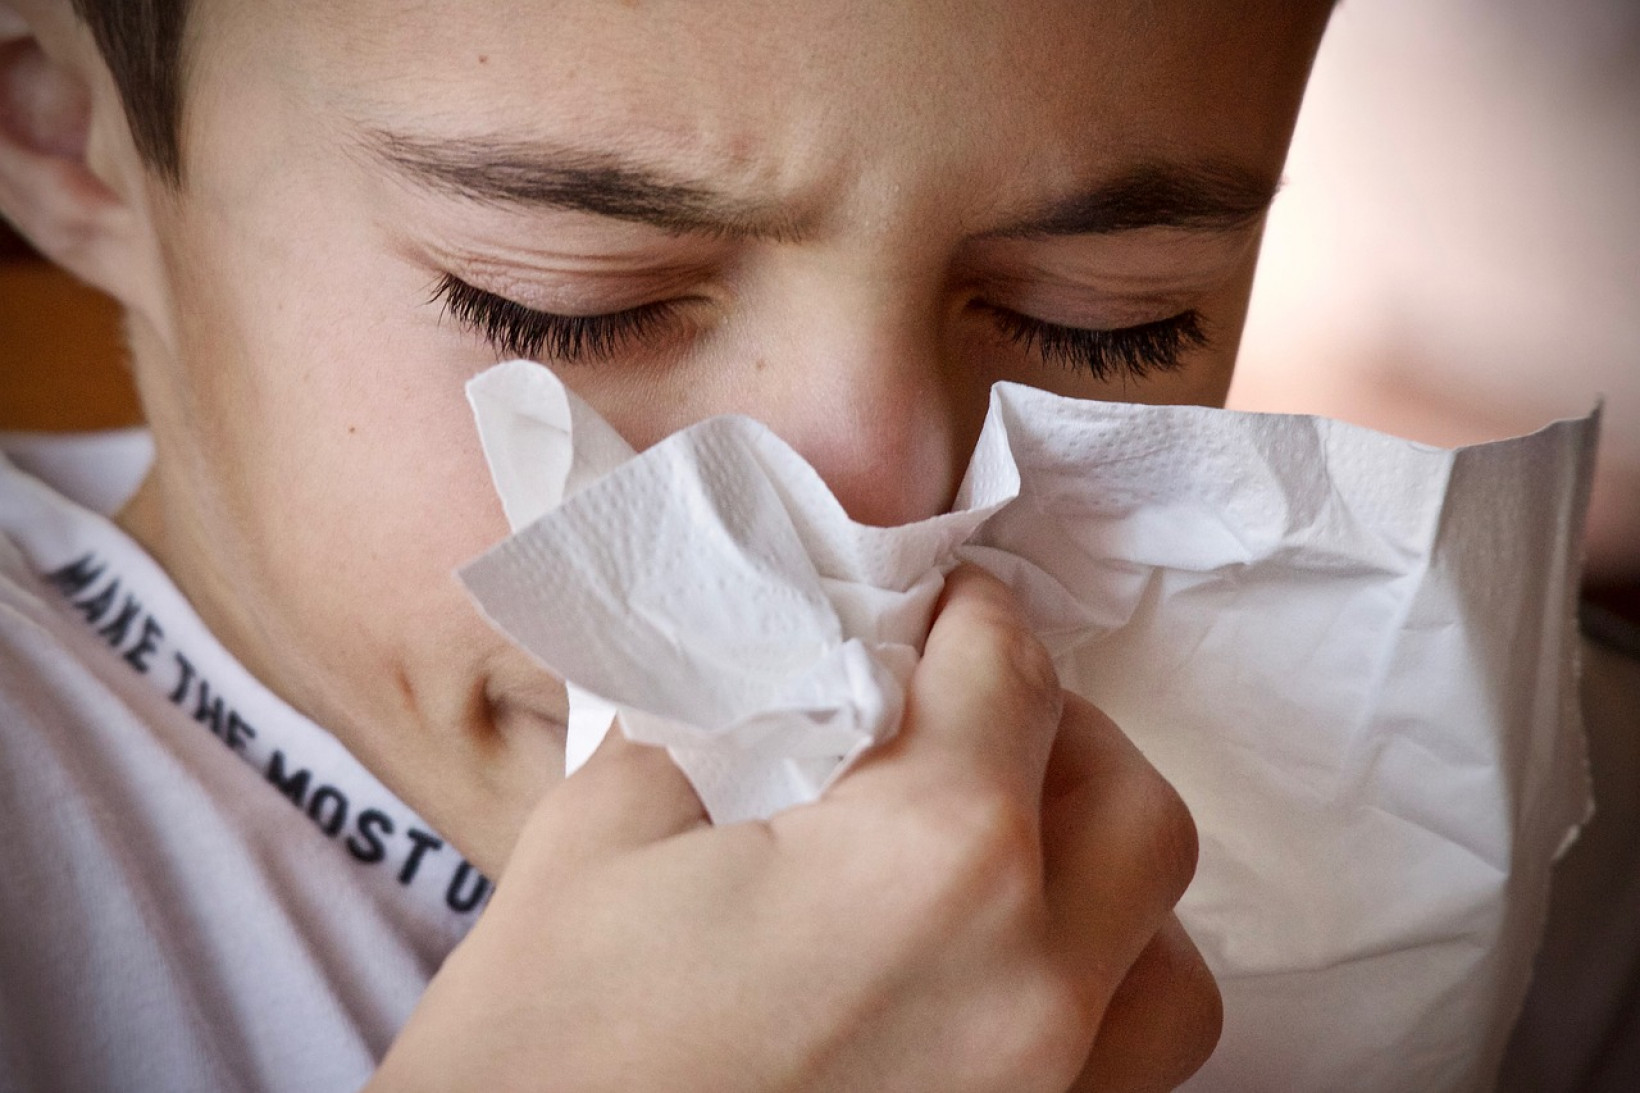 jongetje niest in zakdoek en is allergisch